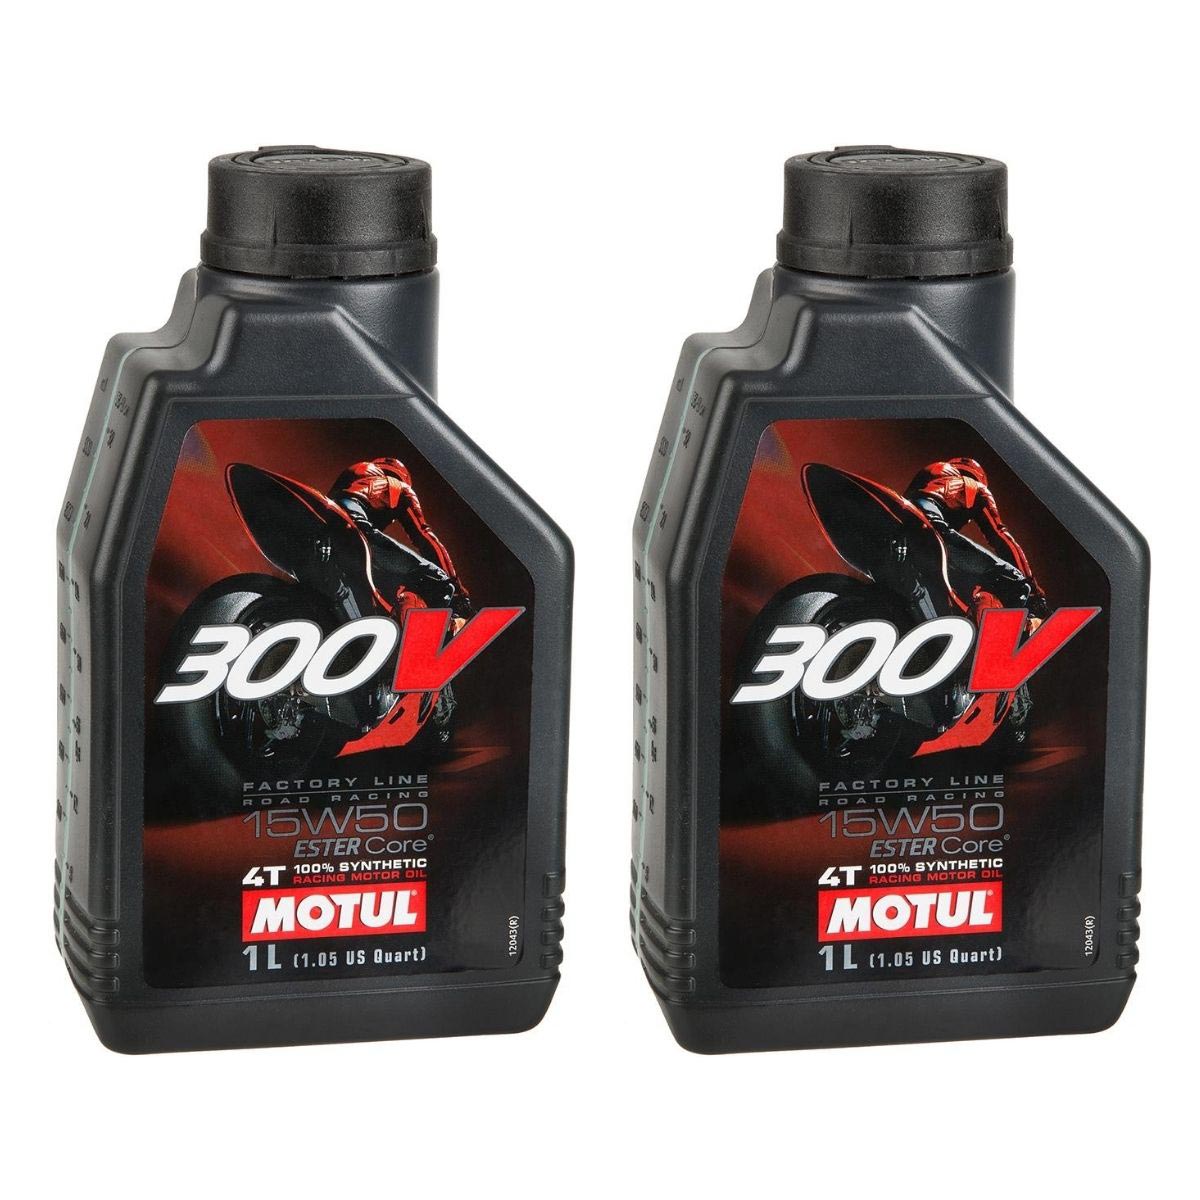 Motul Olio Motore Factory Line Set di 2, 1 L ciascuno, Road Racing 300V, 15W50